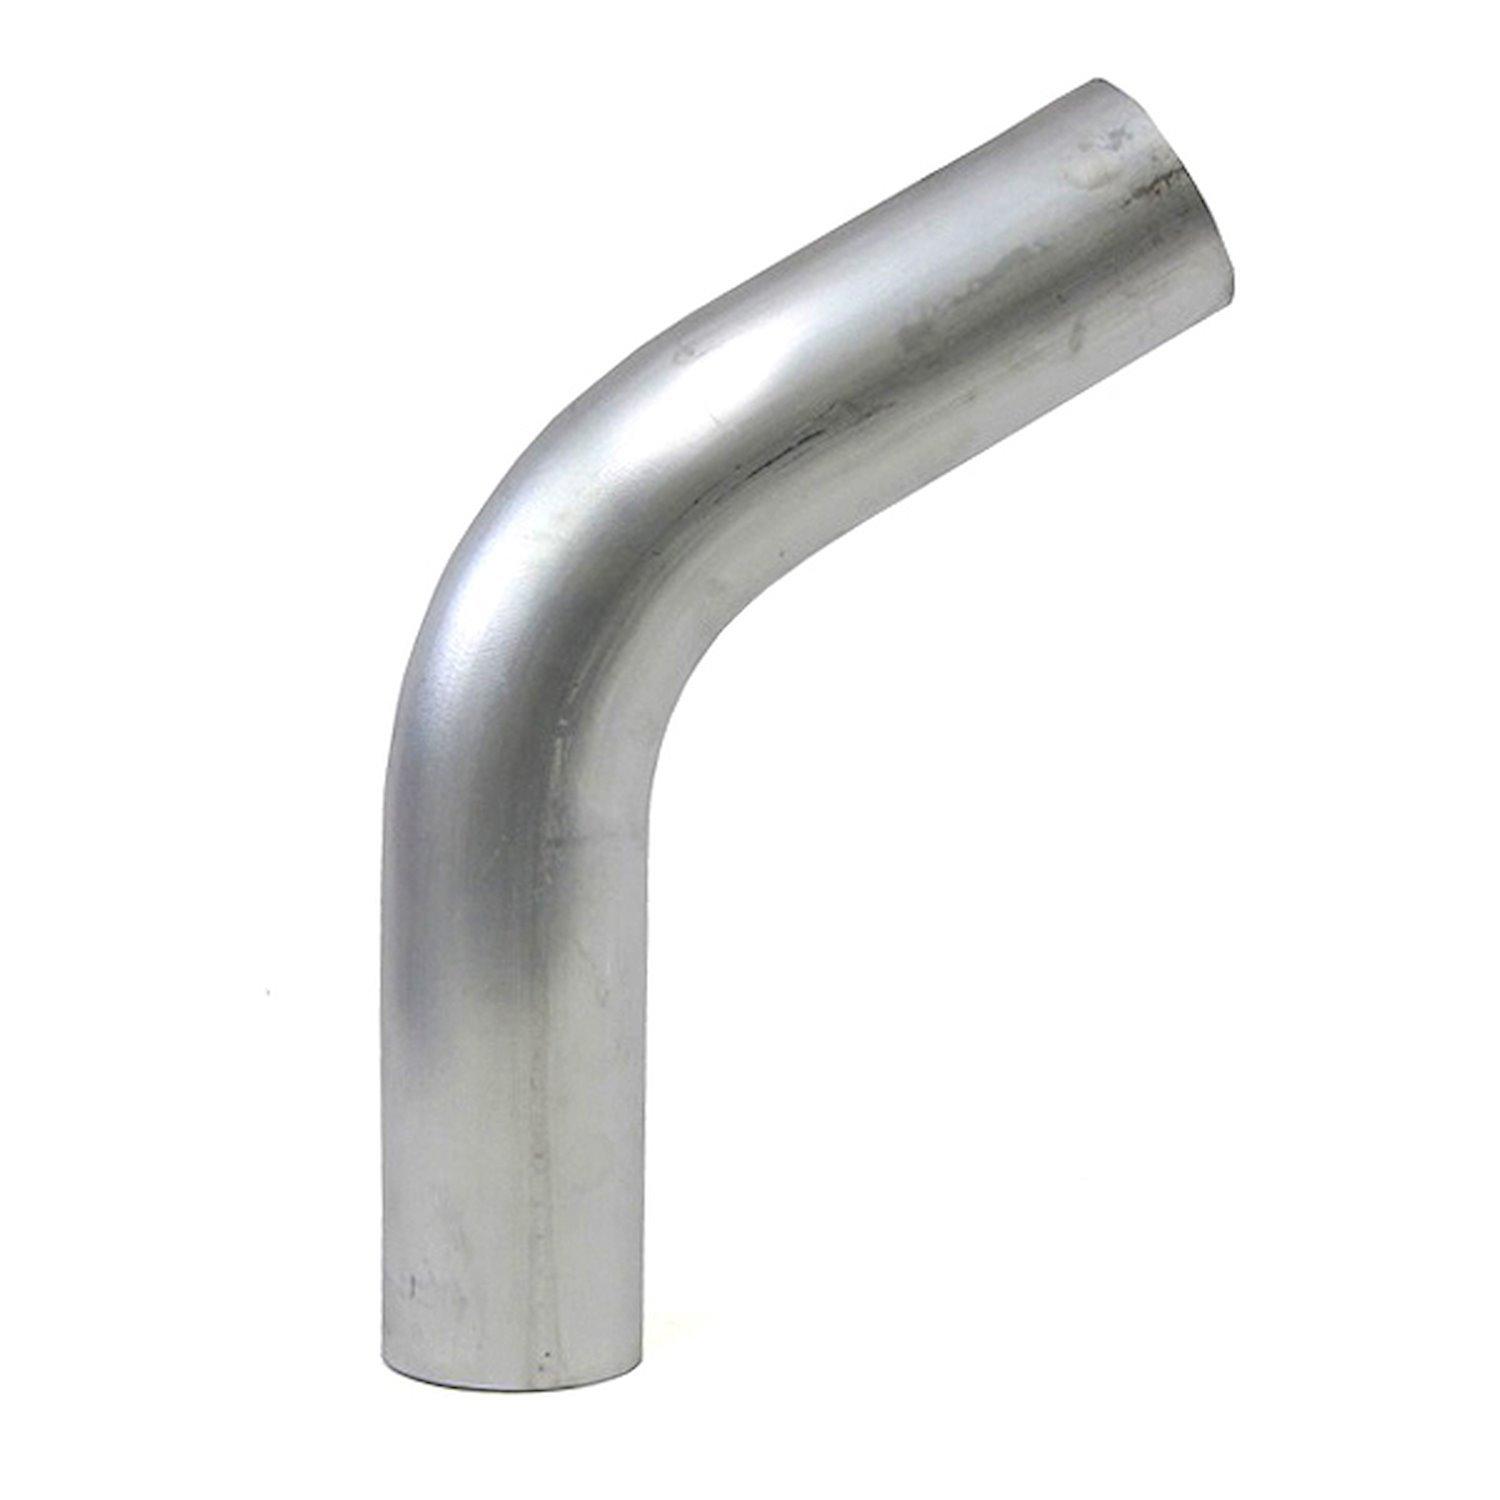 AT60-225-CLR-3 Aluminum Elbow Tube, 6061 Aluminum, 60-Degree Bend Elbow Tubing, 2-1/4 in. OD, Large Radius, 3 in. CLR